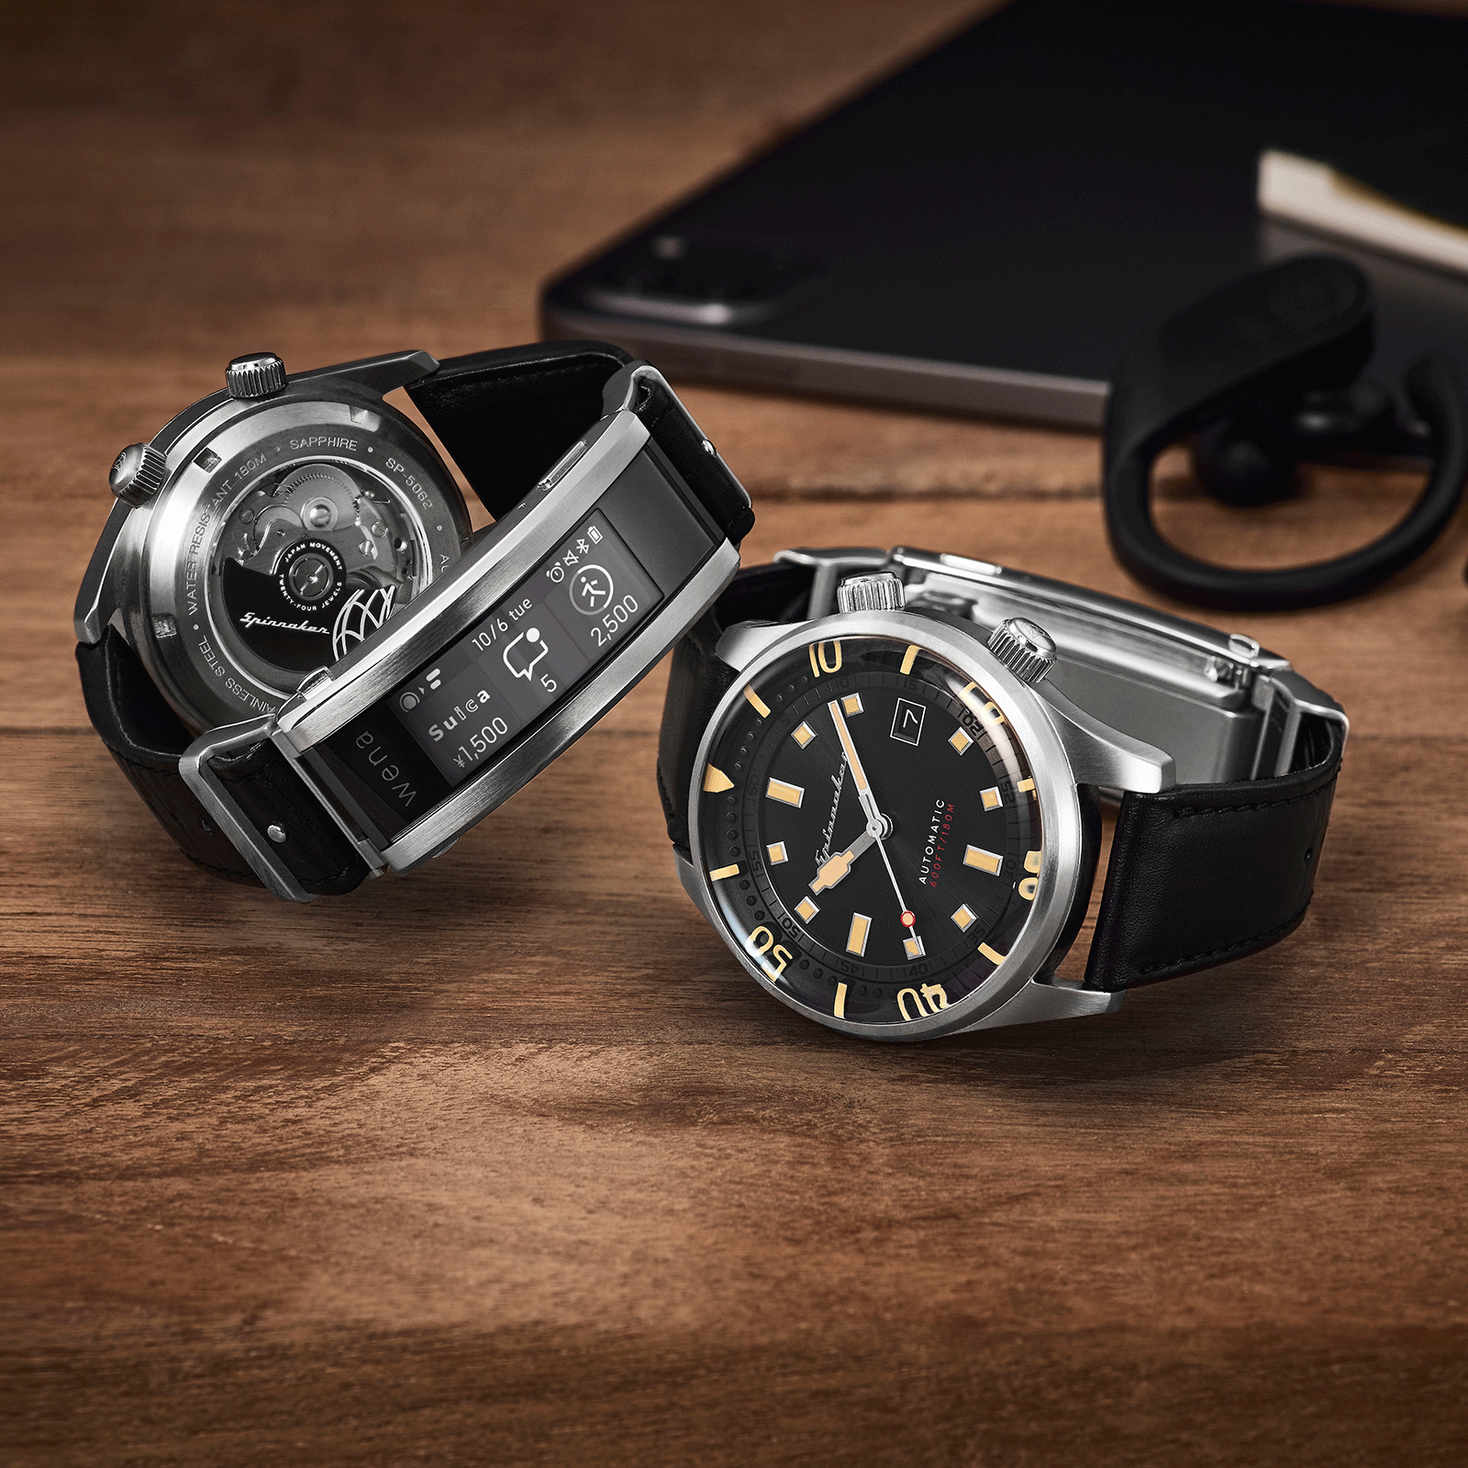 イタリア発の腕時計「スピニカー」とソニーのスマートウォッチ